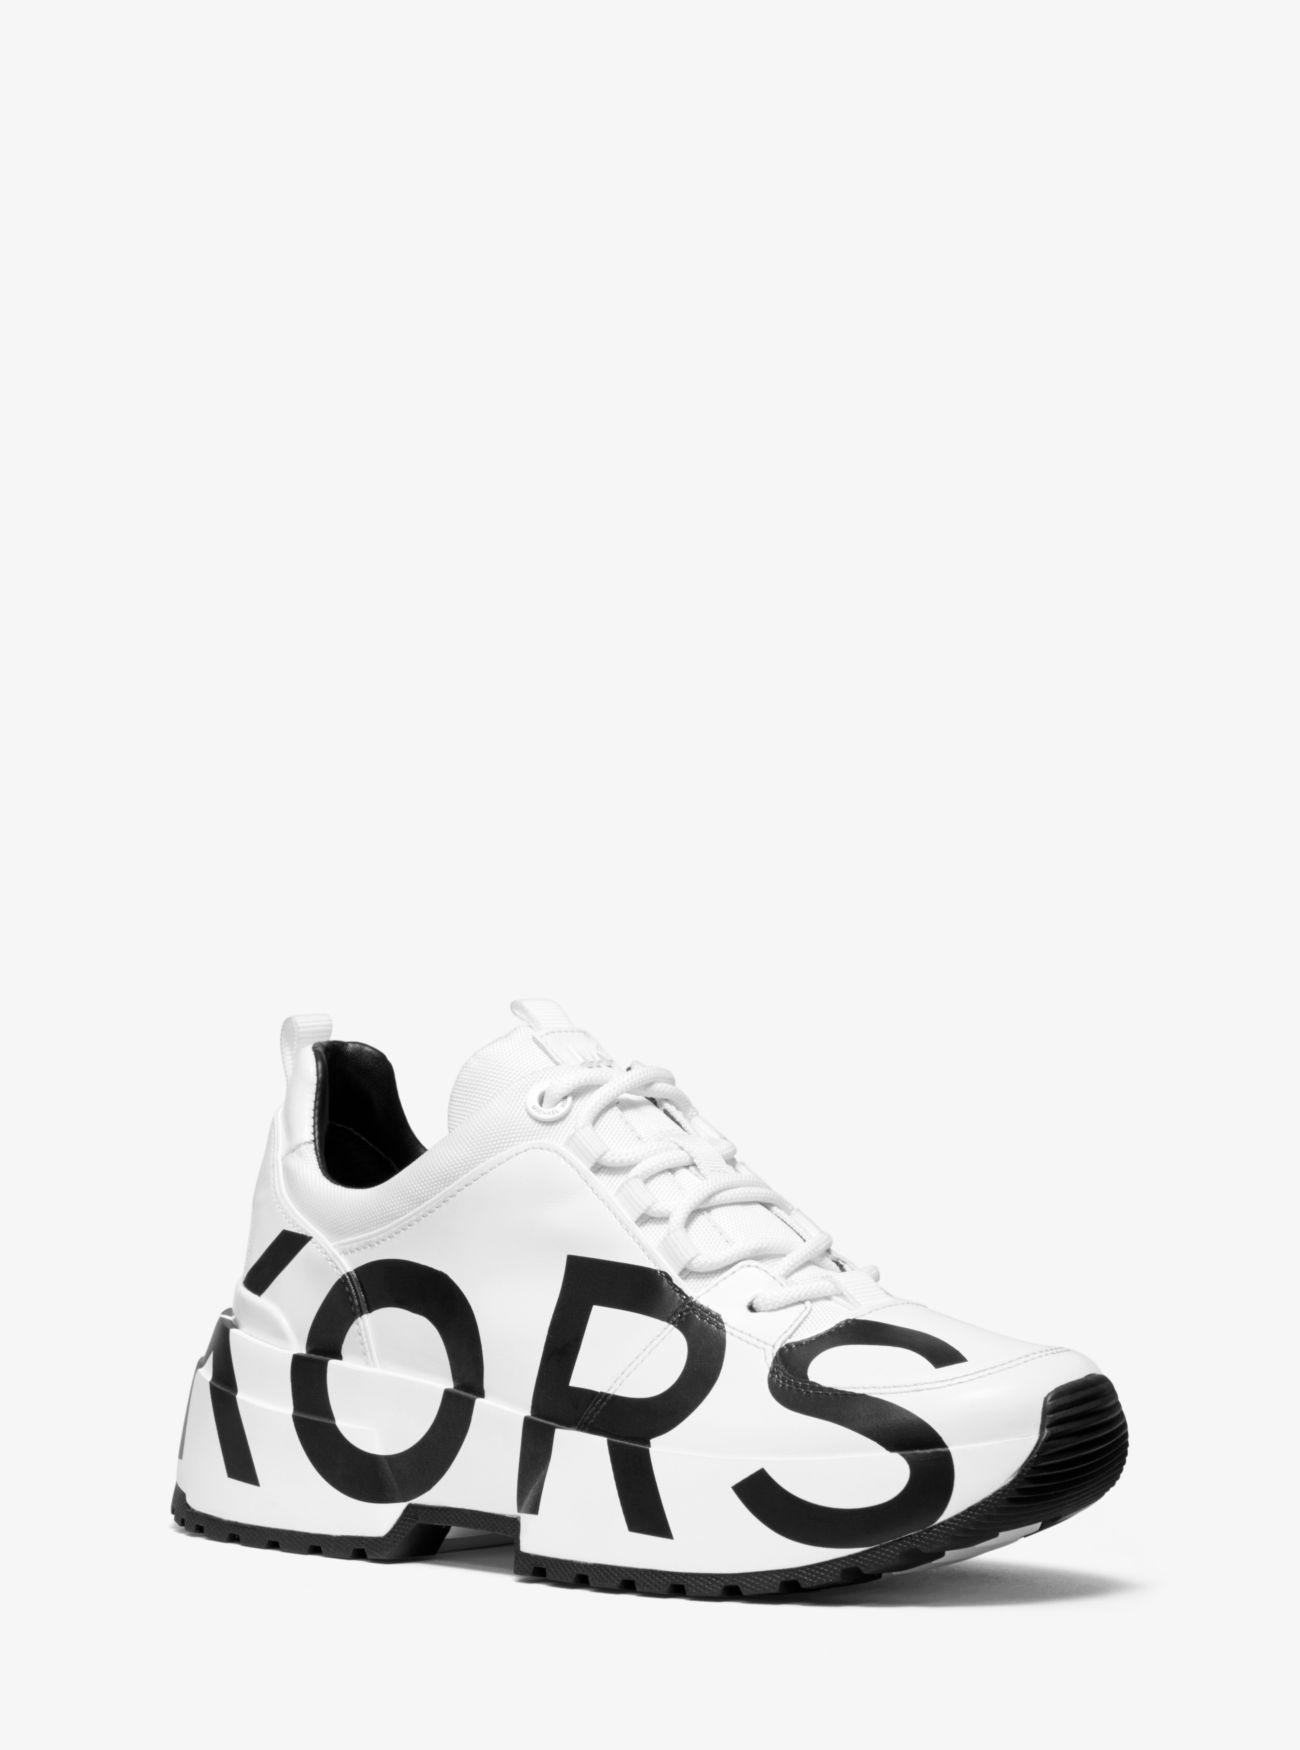 kors sneakers